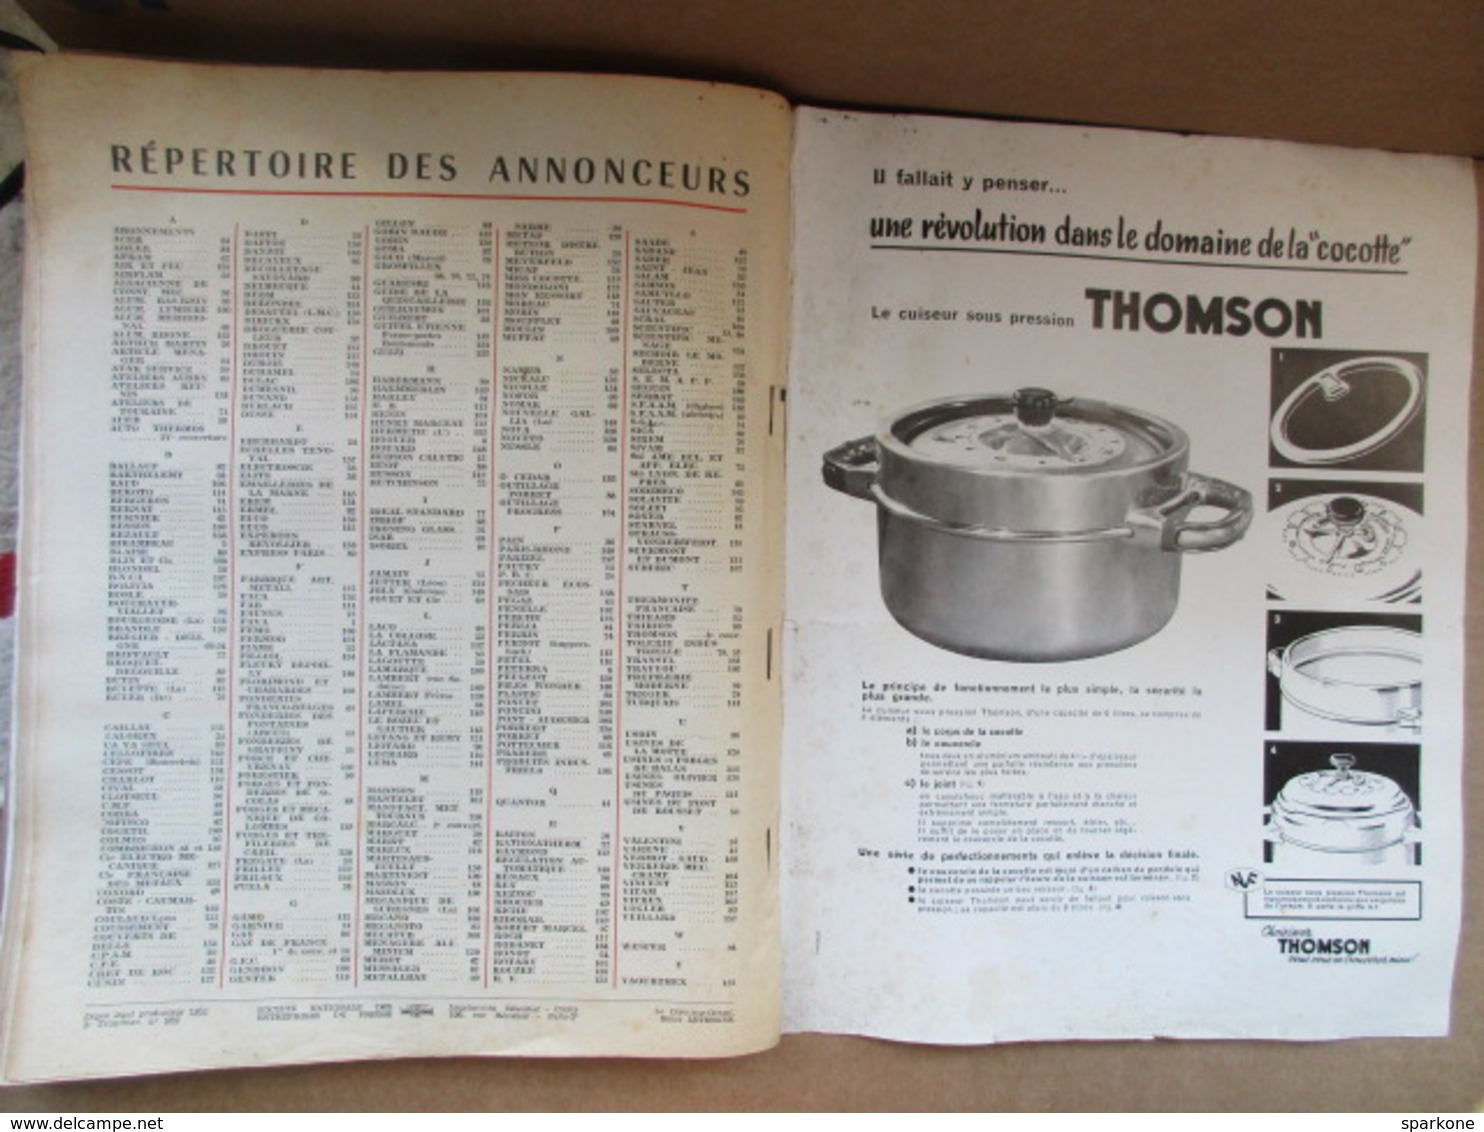 La quincaillerie moderne / fers et métaux / N° 105 Septembre 1954 / Publicité